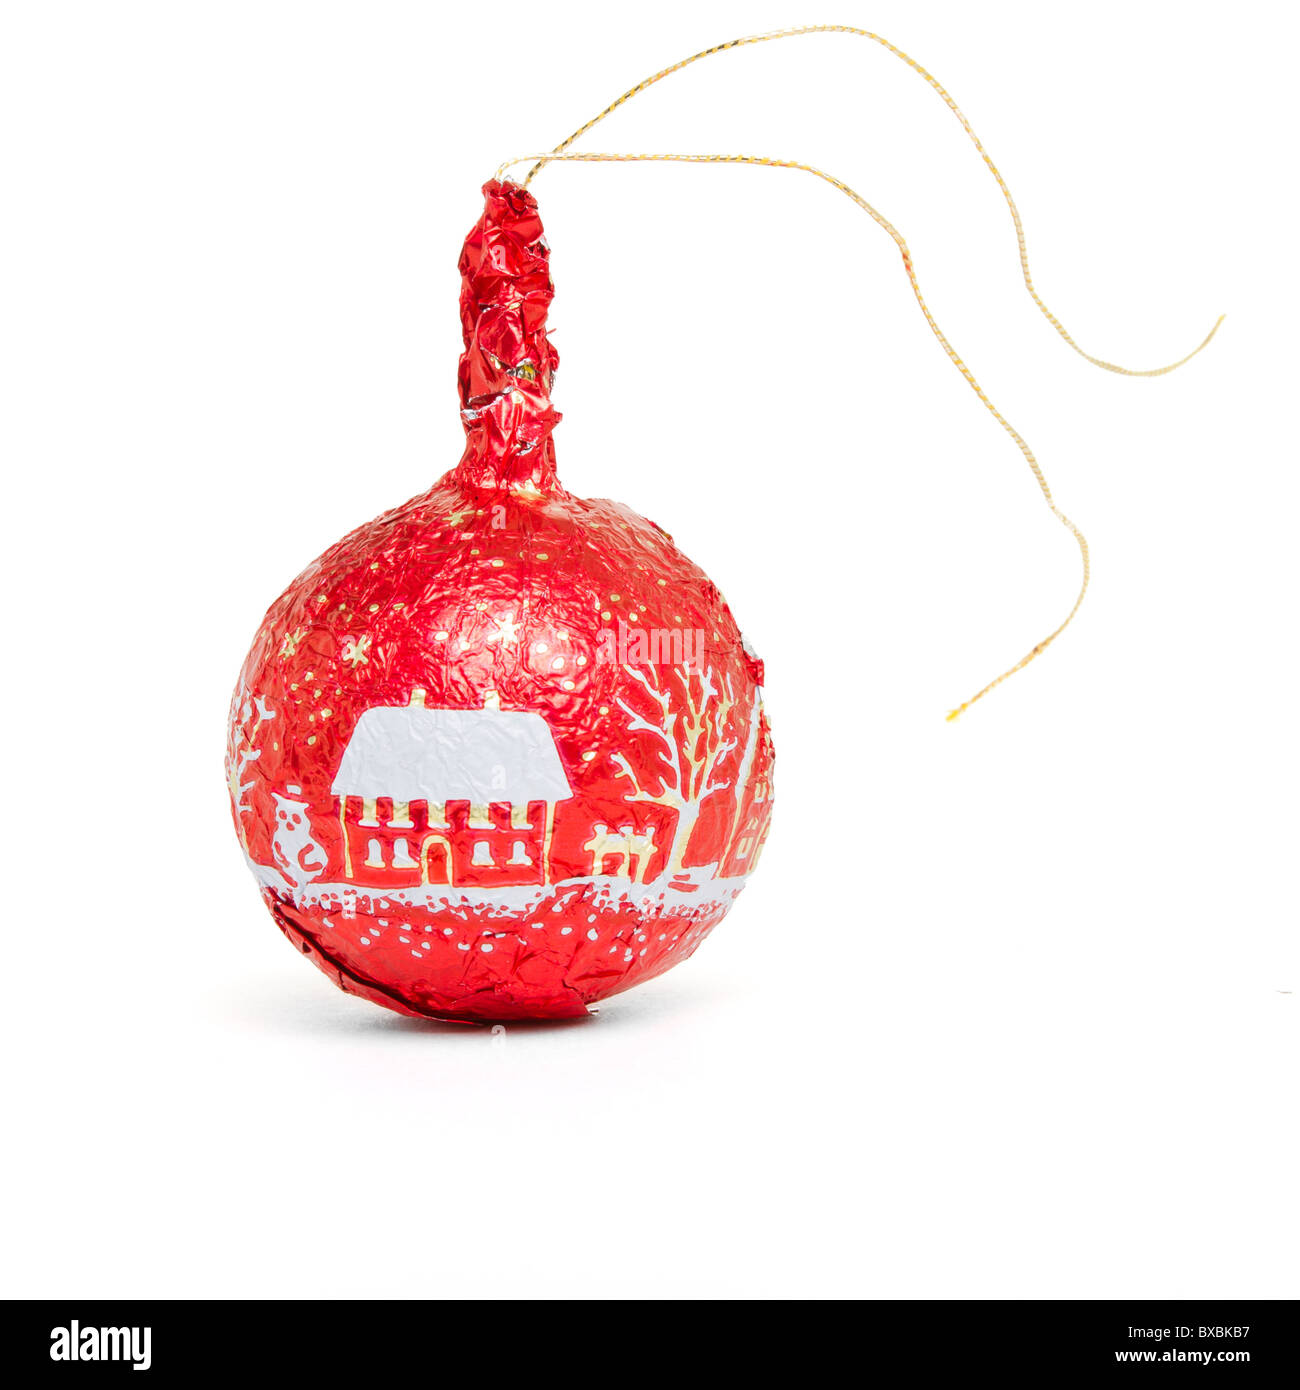 Rote Folie verpackt Schokolade Weihnachtskugel Weihnachten Baumschmuck  isoliert auf weiss Stockfotografie - Alamy